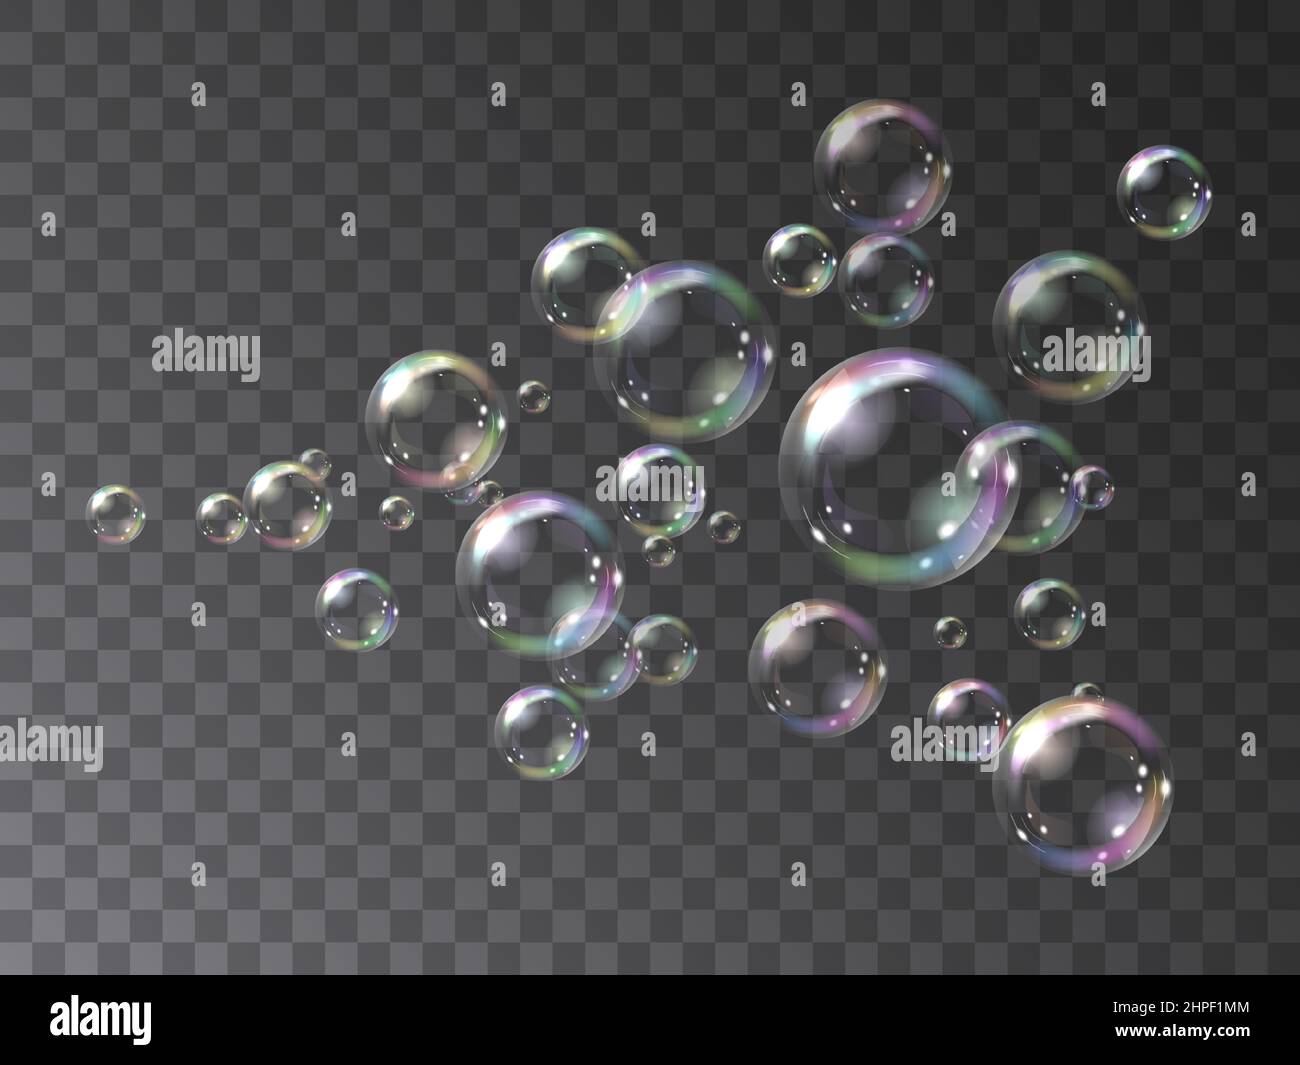 Seifenblasen fliegen in einem Jet. Vektor-Illustration von realistisch irisierenden Seifenblasen fliegen in einem Fluss isoliert auf einem transparenten Hintergrund. Stock Vektor